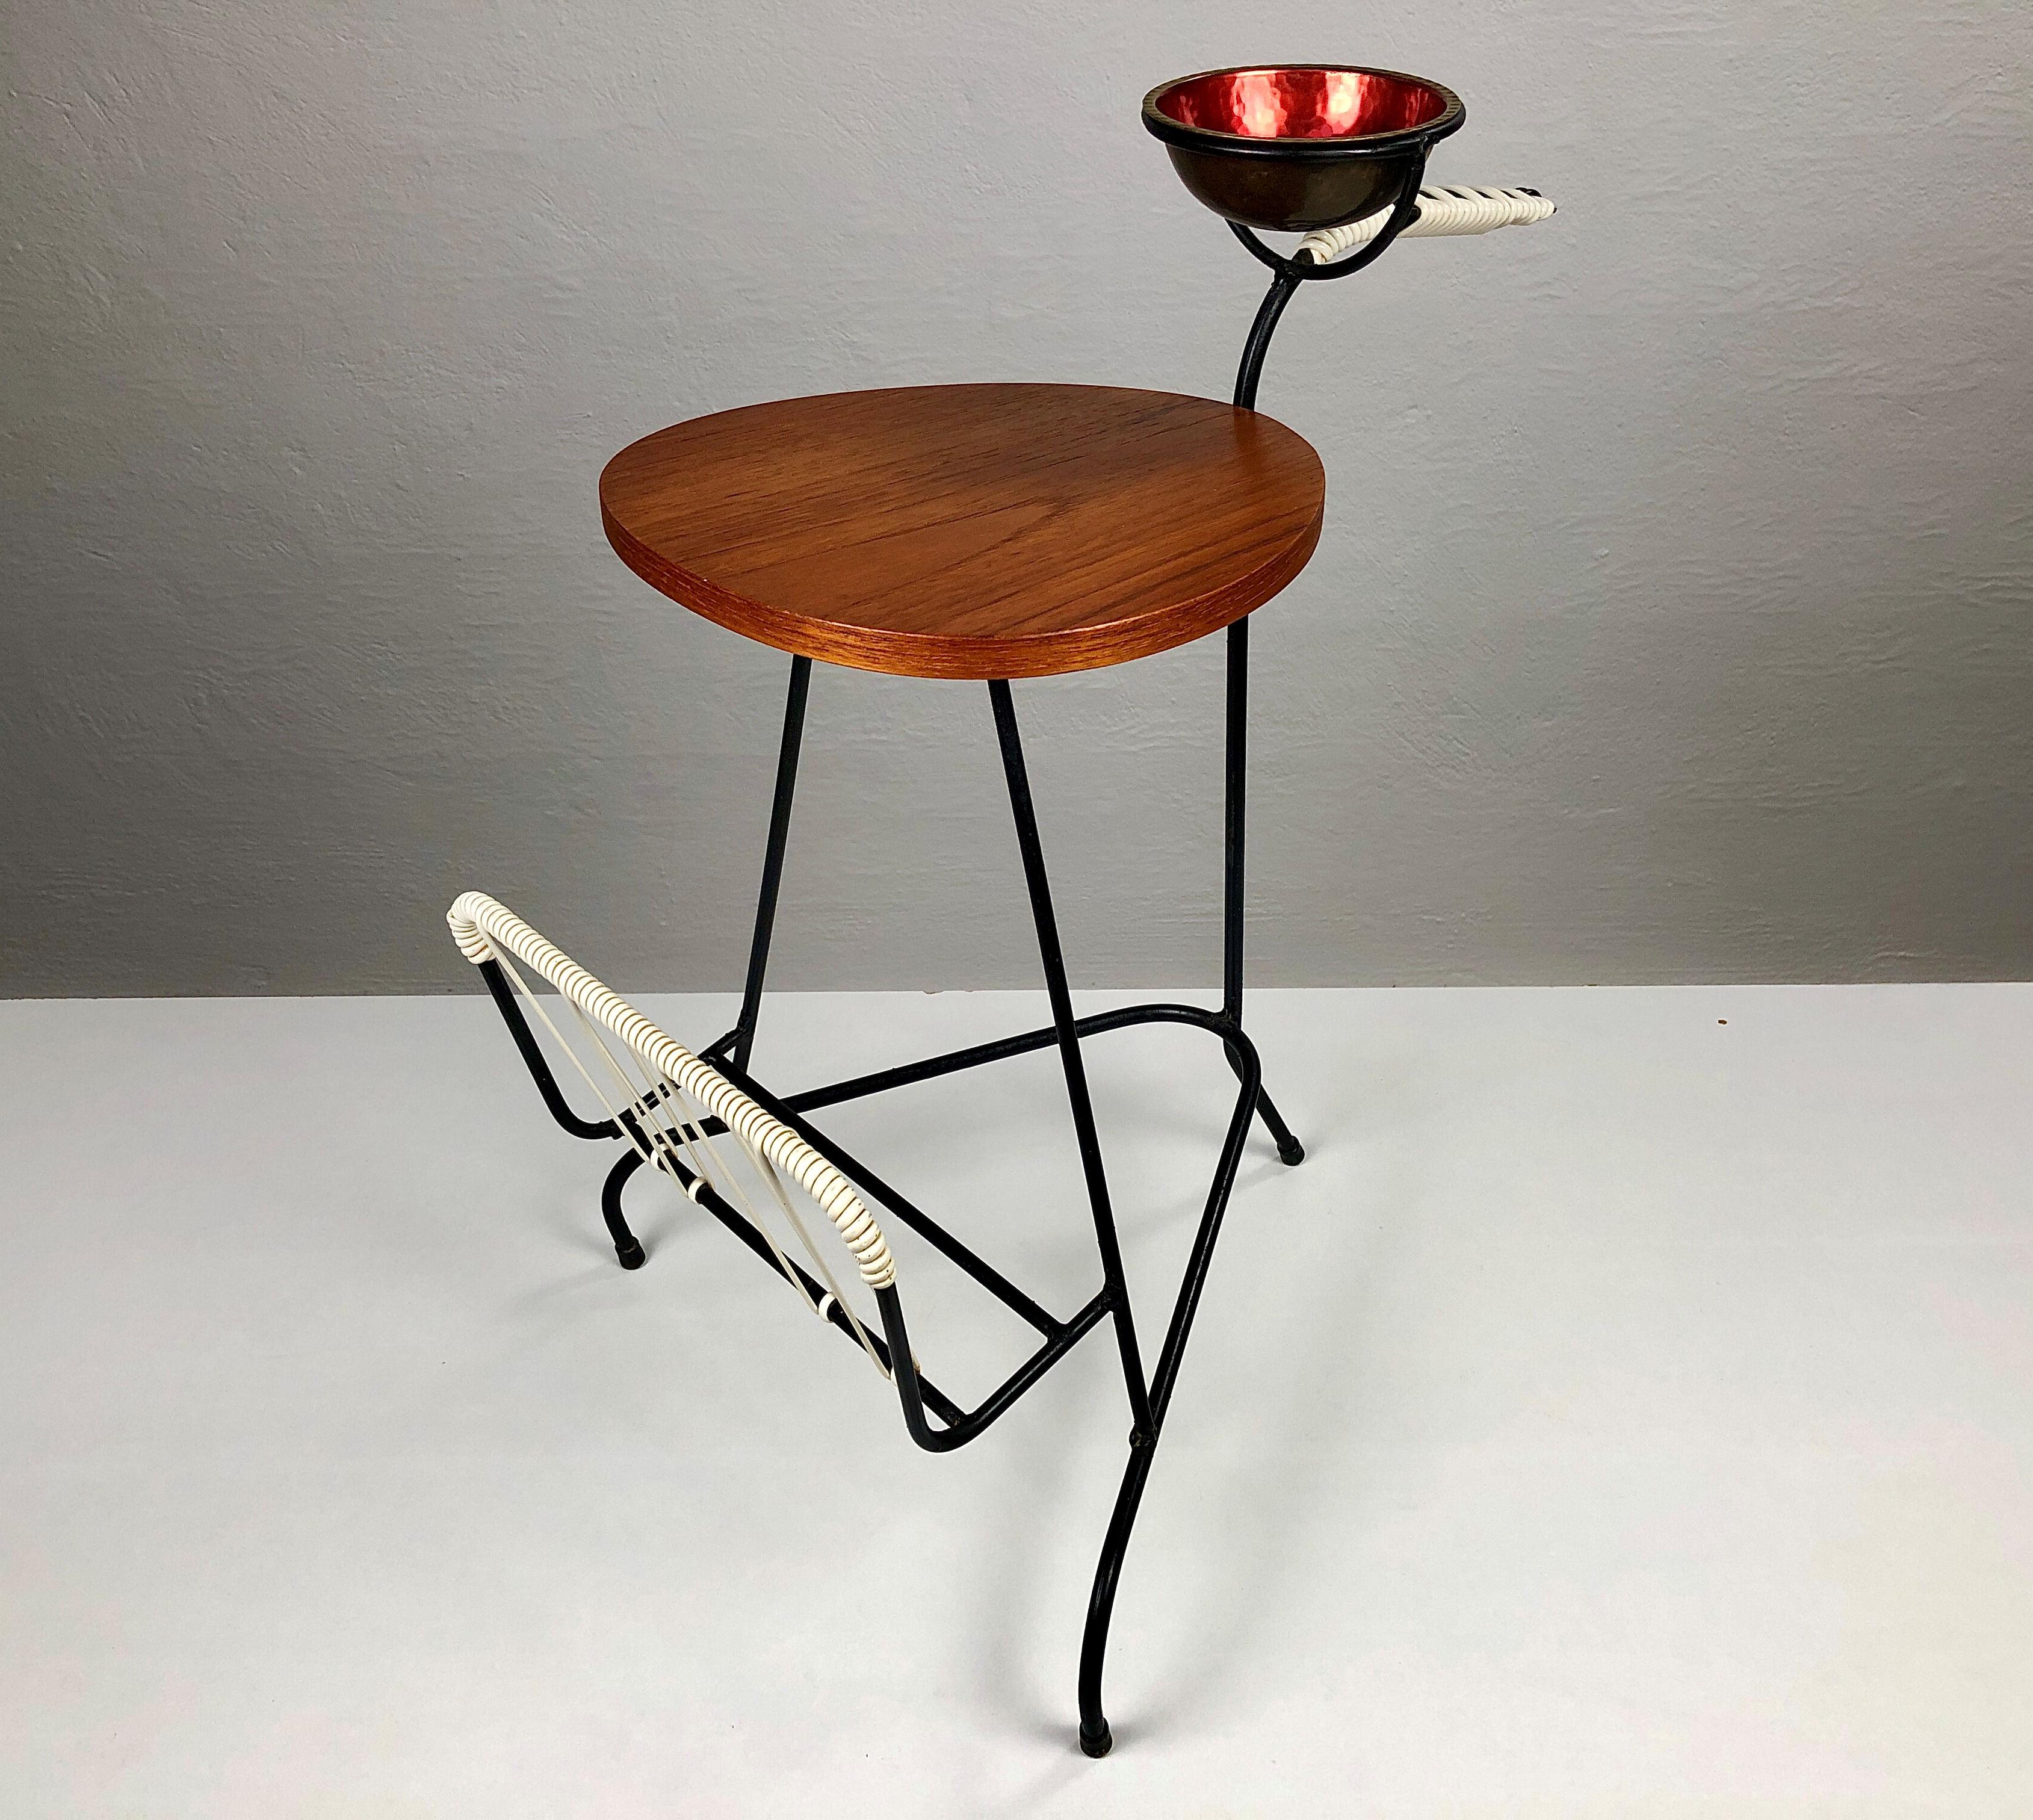 Kleiner dänischer Beistelltisch - Tabletttisch aus Teakholz und schwarzem Metall aus den 1950-1960er Jahren.

Der Tisch bietet alles, was man für eine kleine Pause braucht: eine kleine Tischplatte aus Teakholz für eine Tasse Kaffee oder ein Getränk